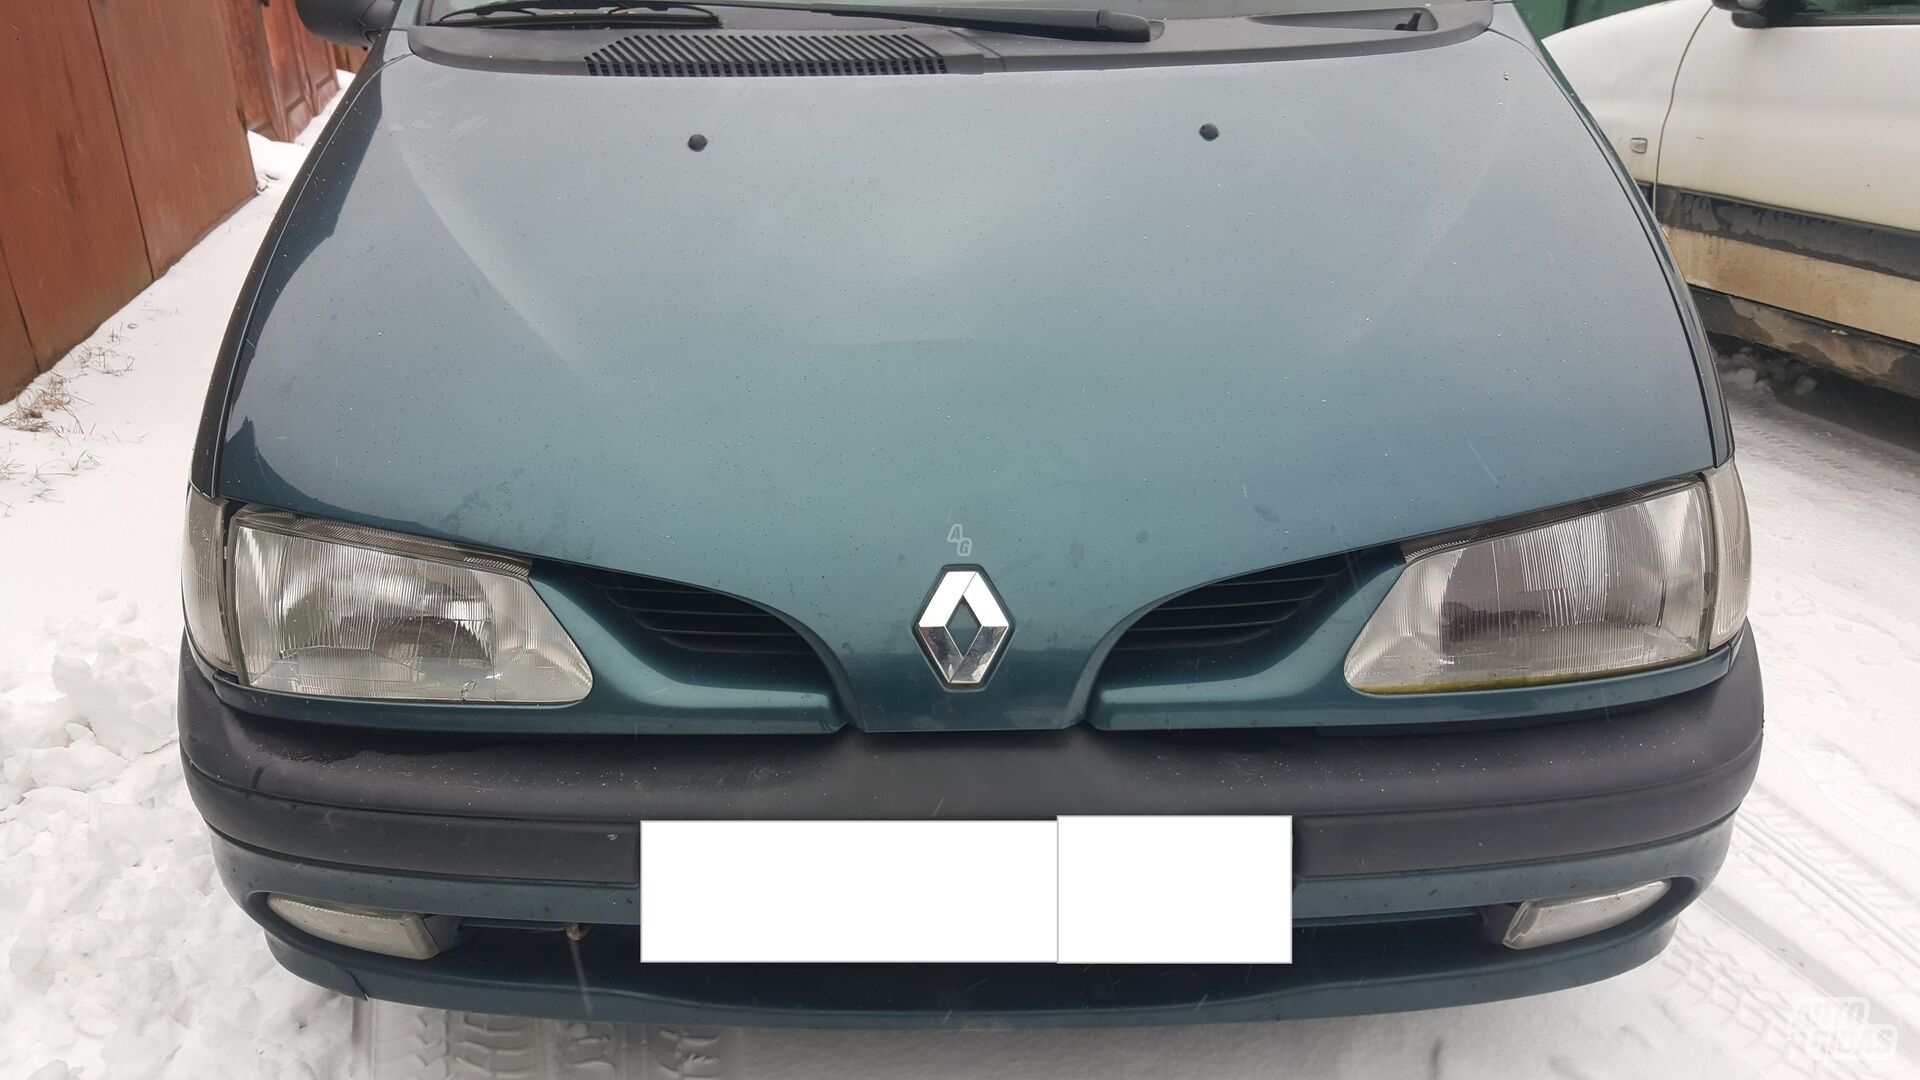 Renault Scenic I 1997 г запчясти